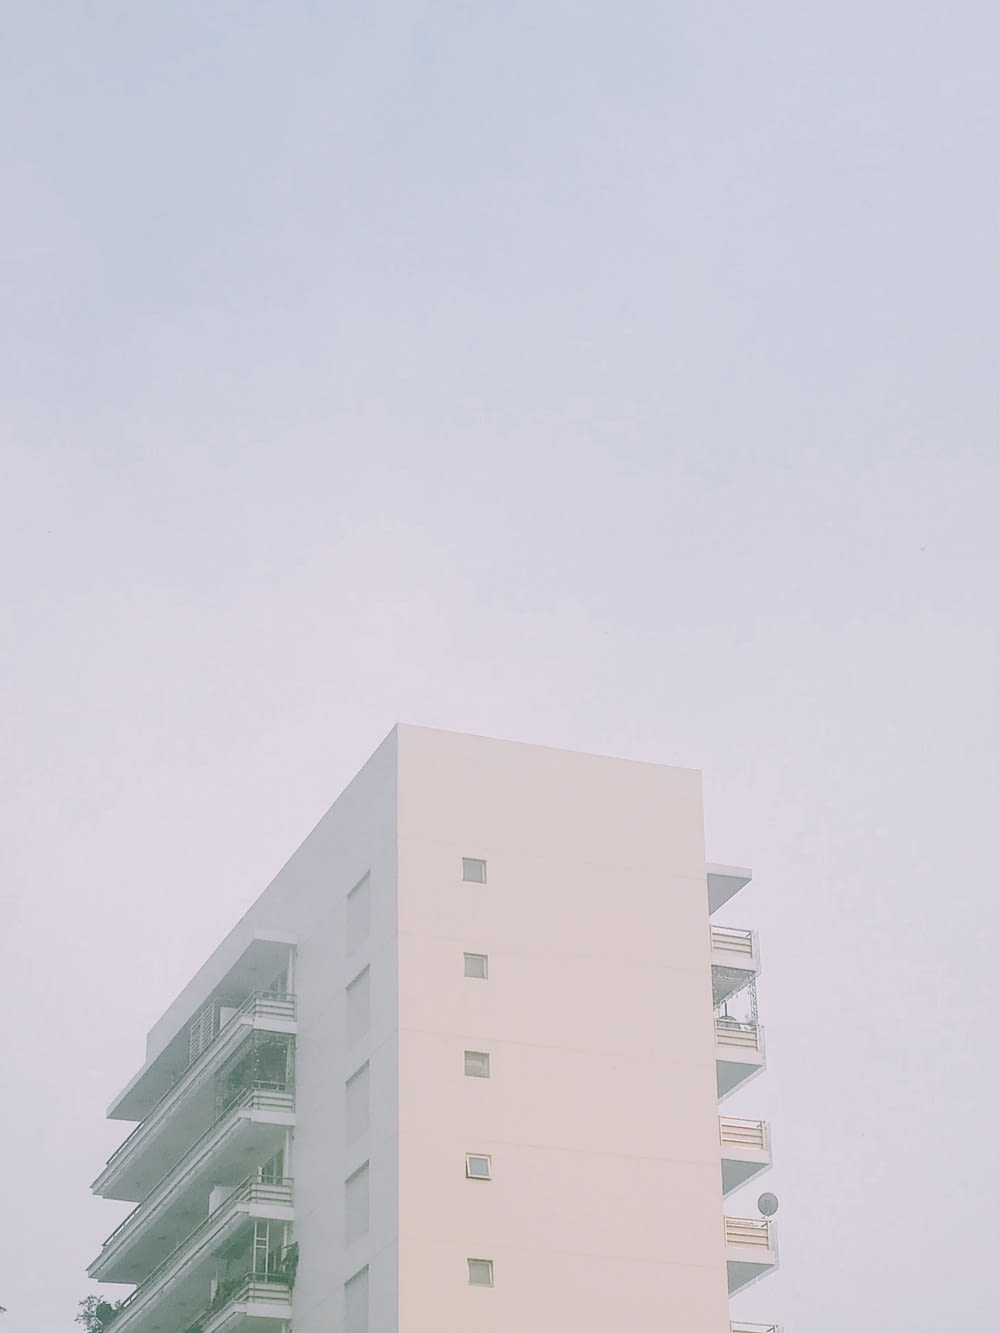 Un alto edificio bianco con balconi sopra di esso